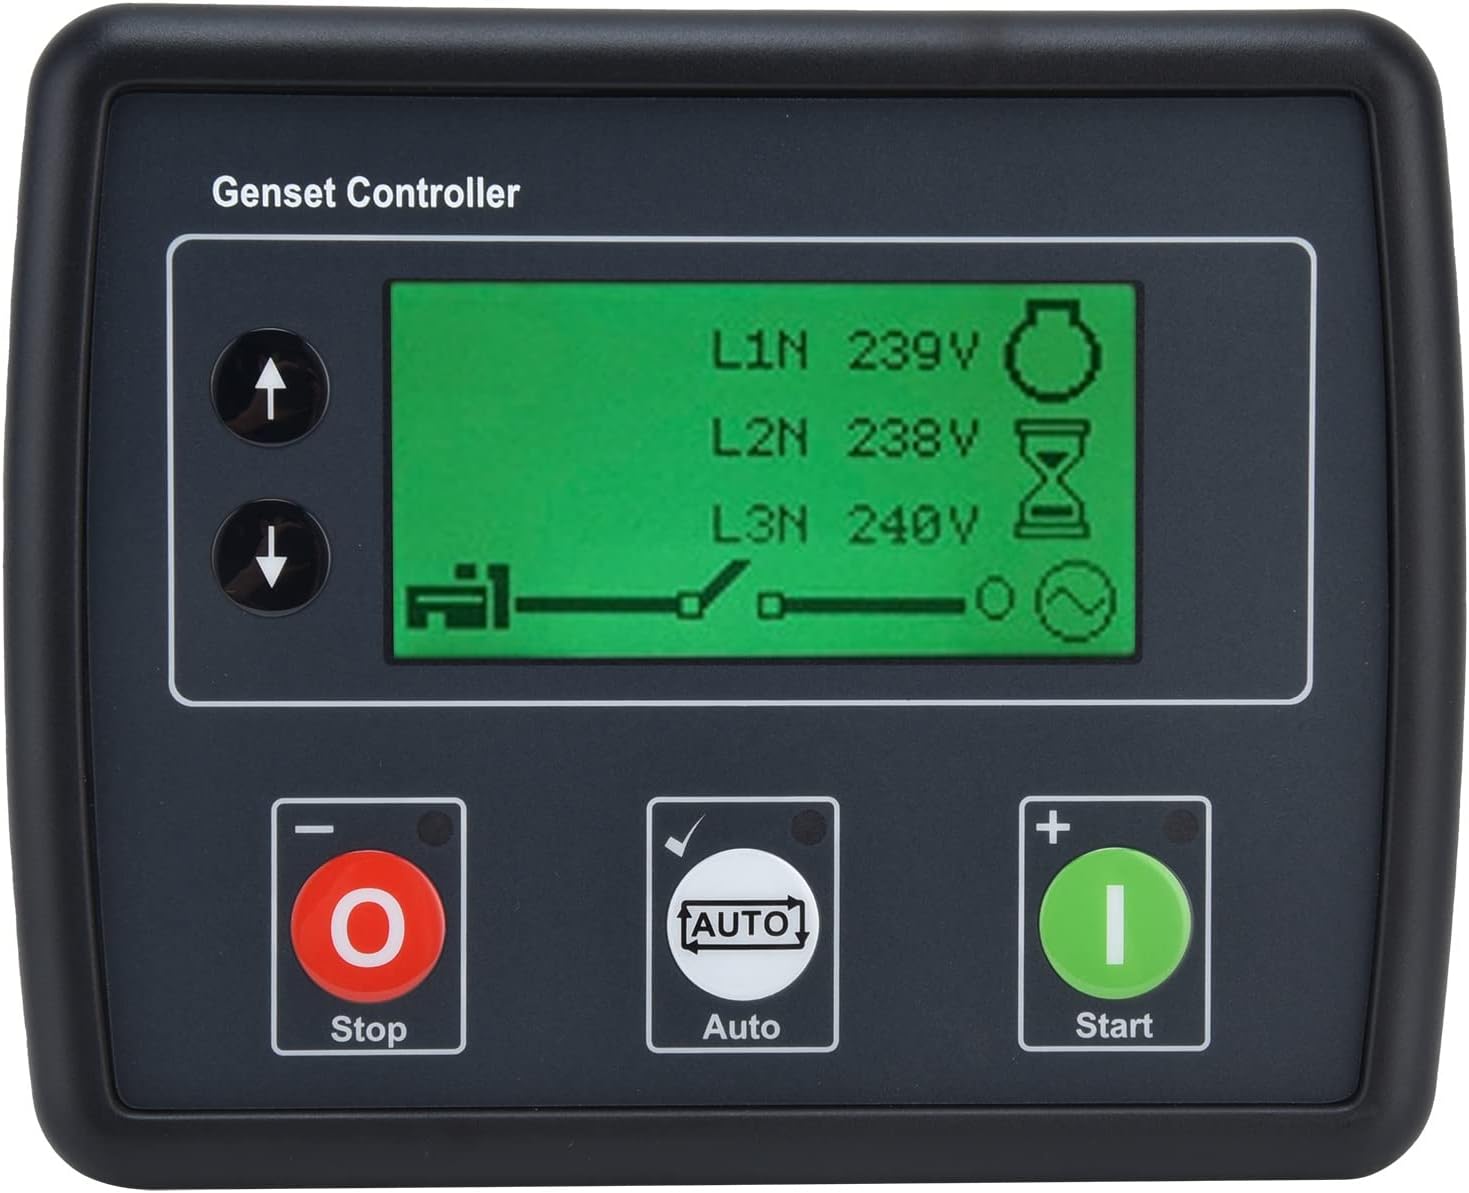 Luqeeg DSE4510 Generator Controller Review